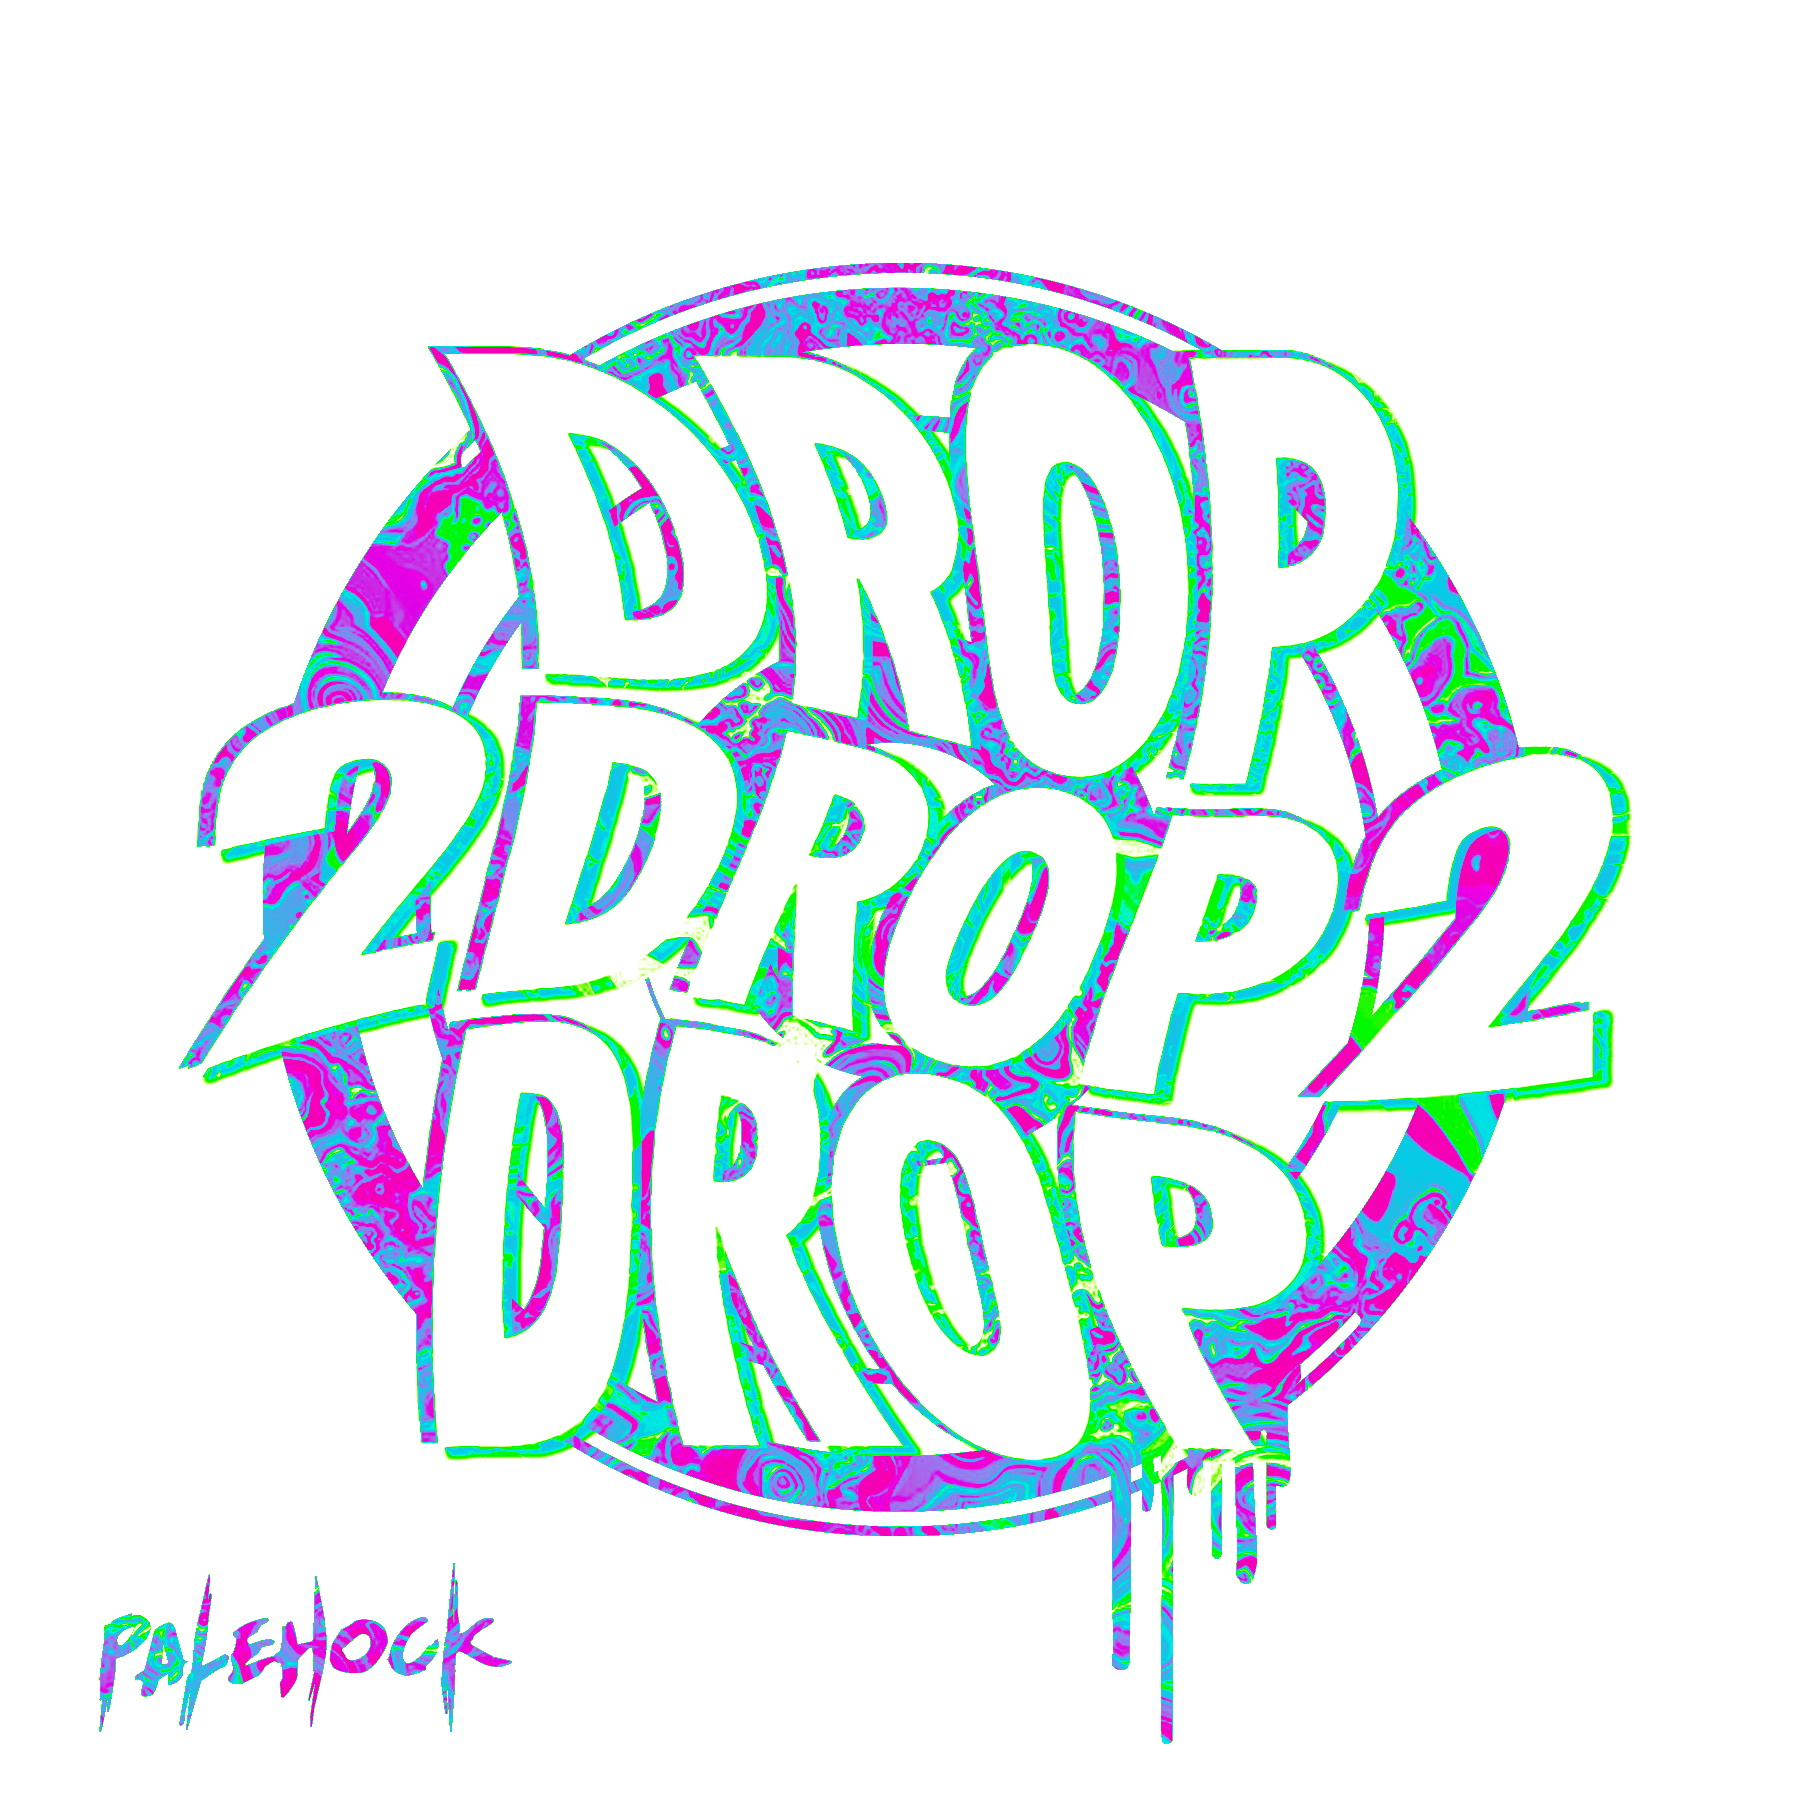 palehock-drop.jpg